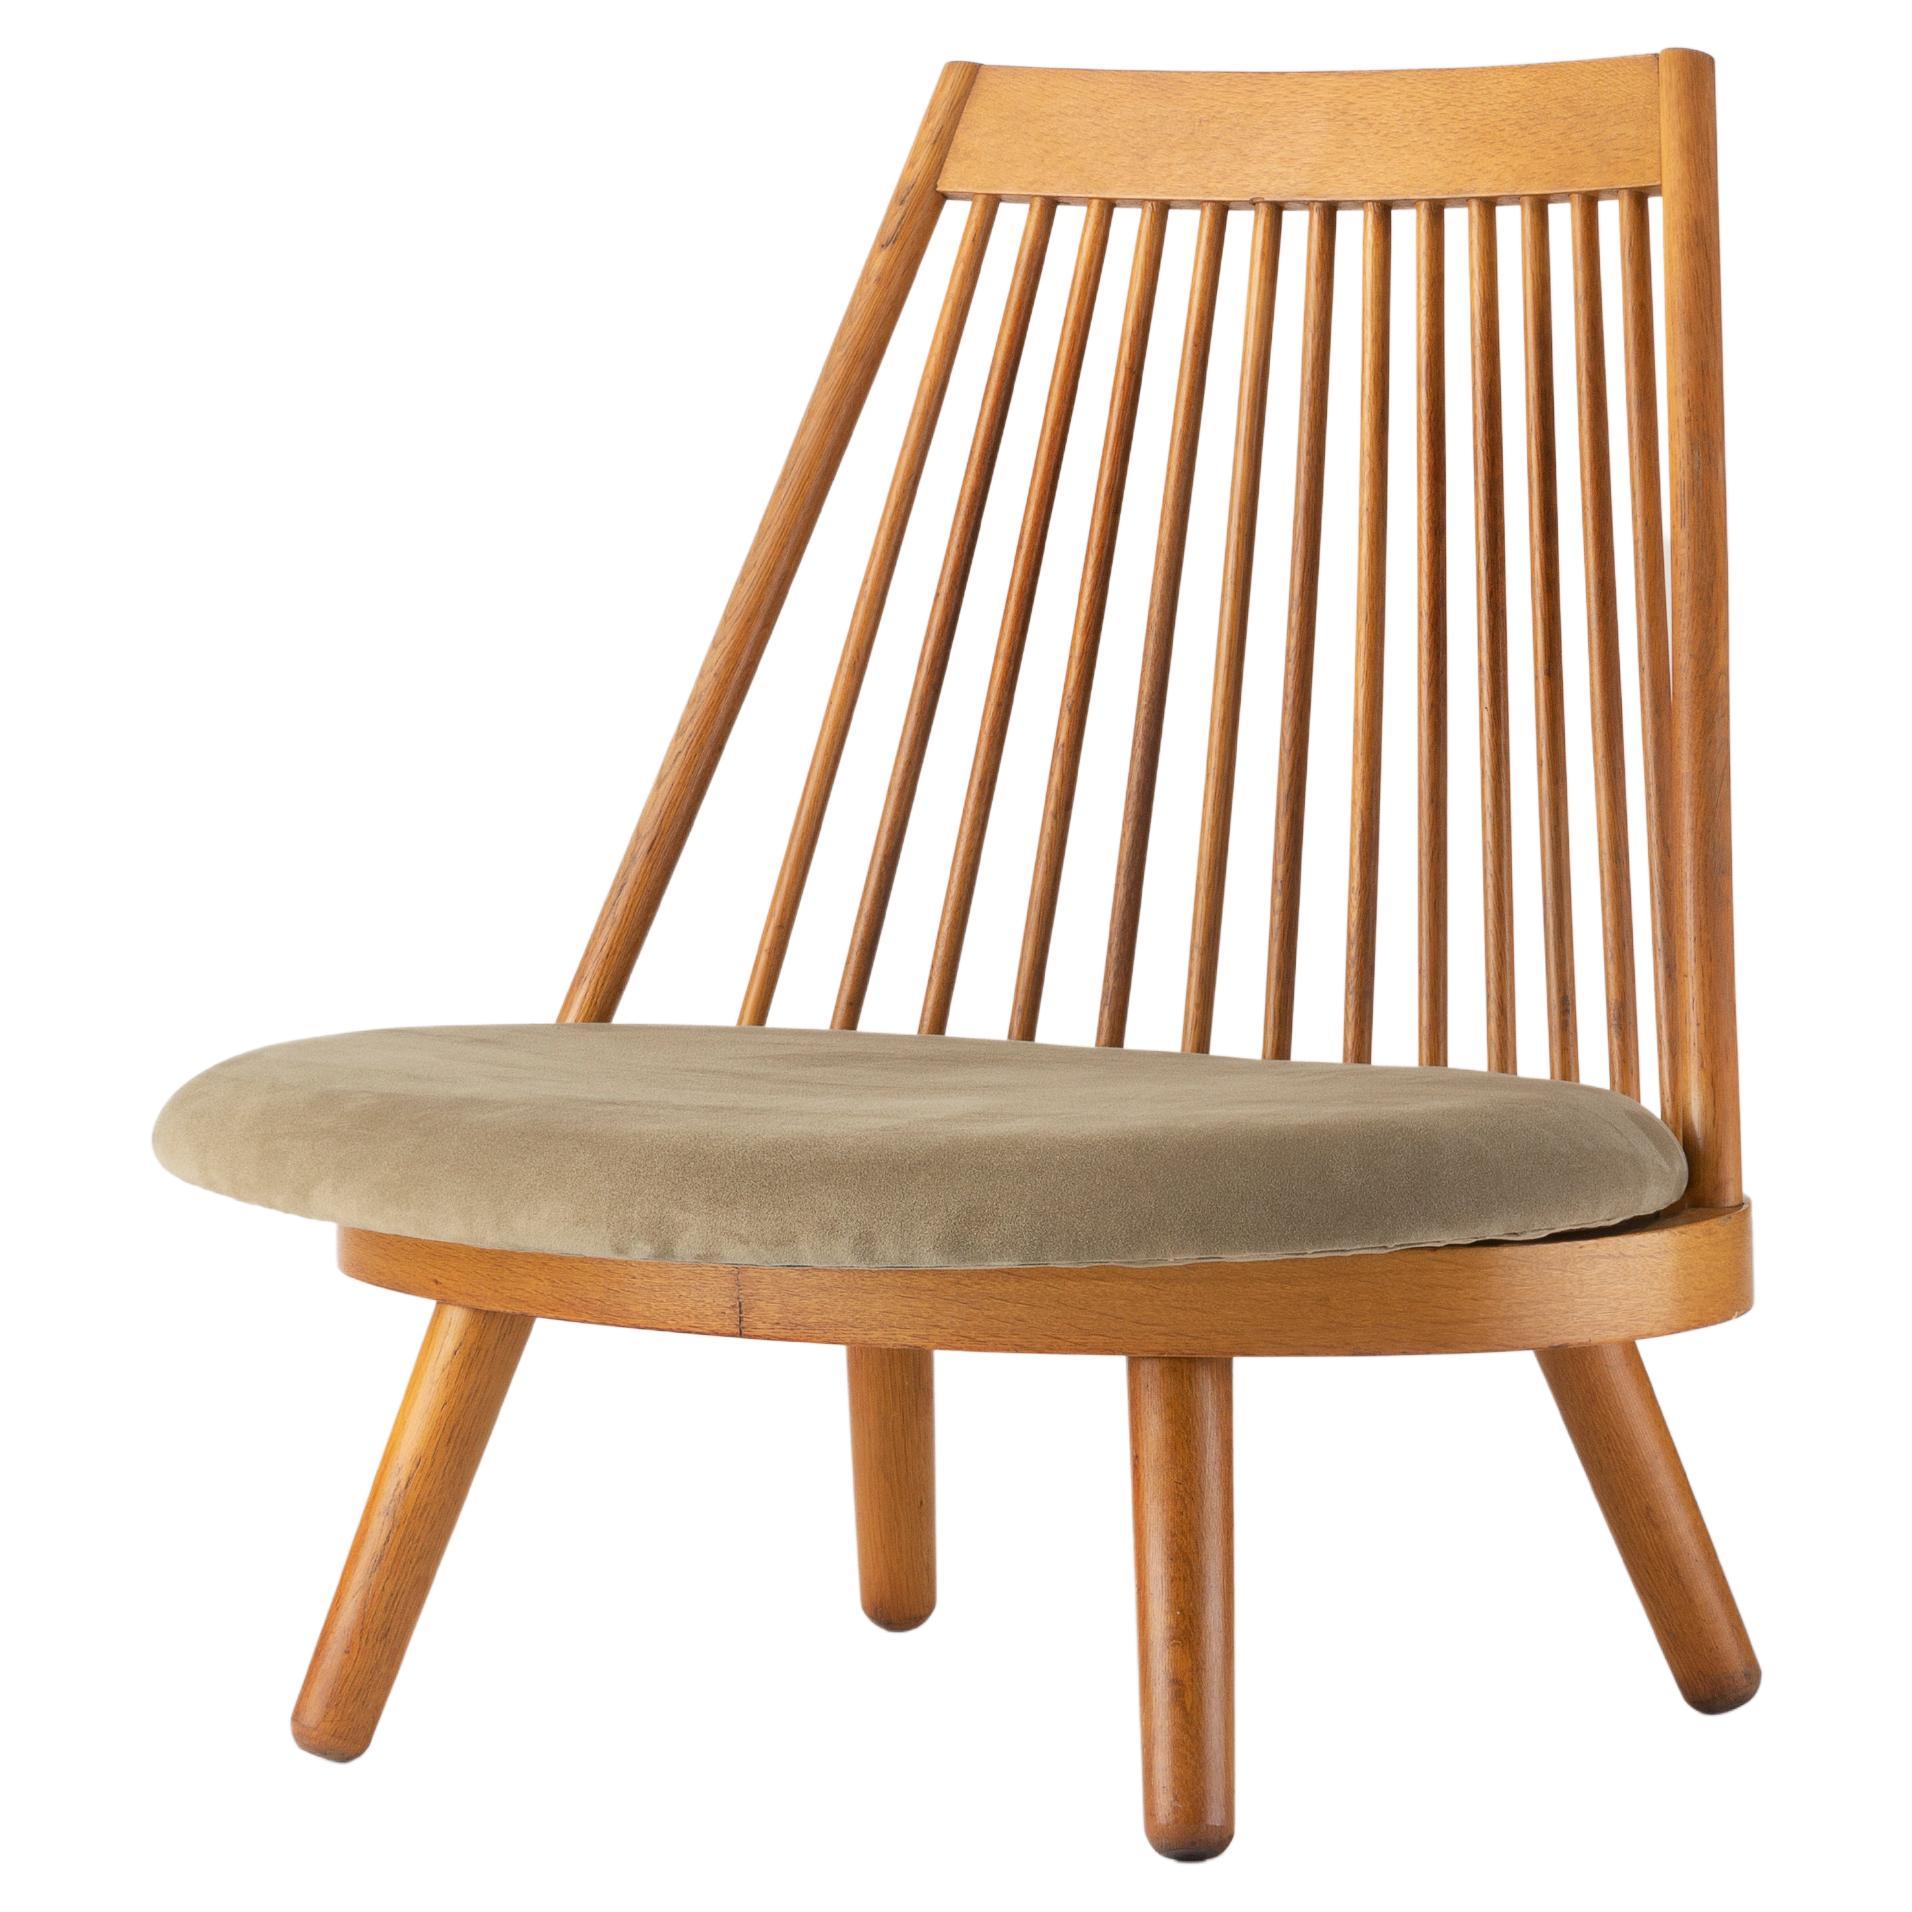 Spoke Chair by Katsuhei Toyoguchi